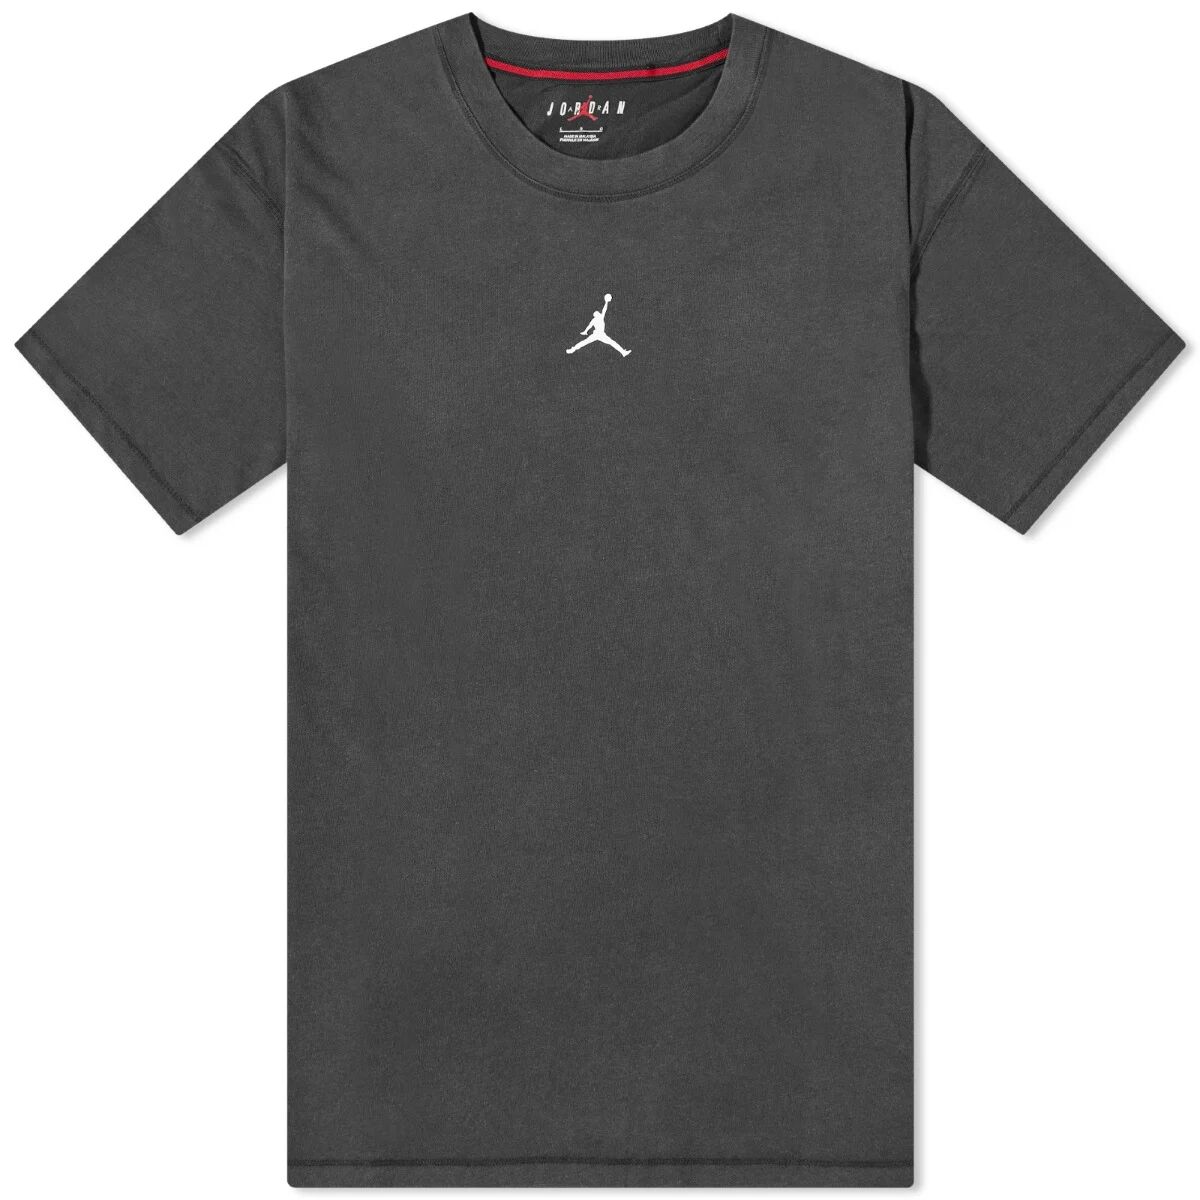 Air Jordan Men's Washed Jumpman T-Shirt in Black/White, Size Medium